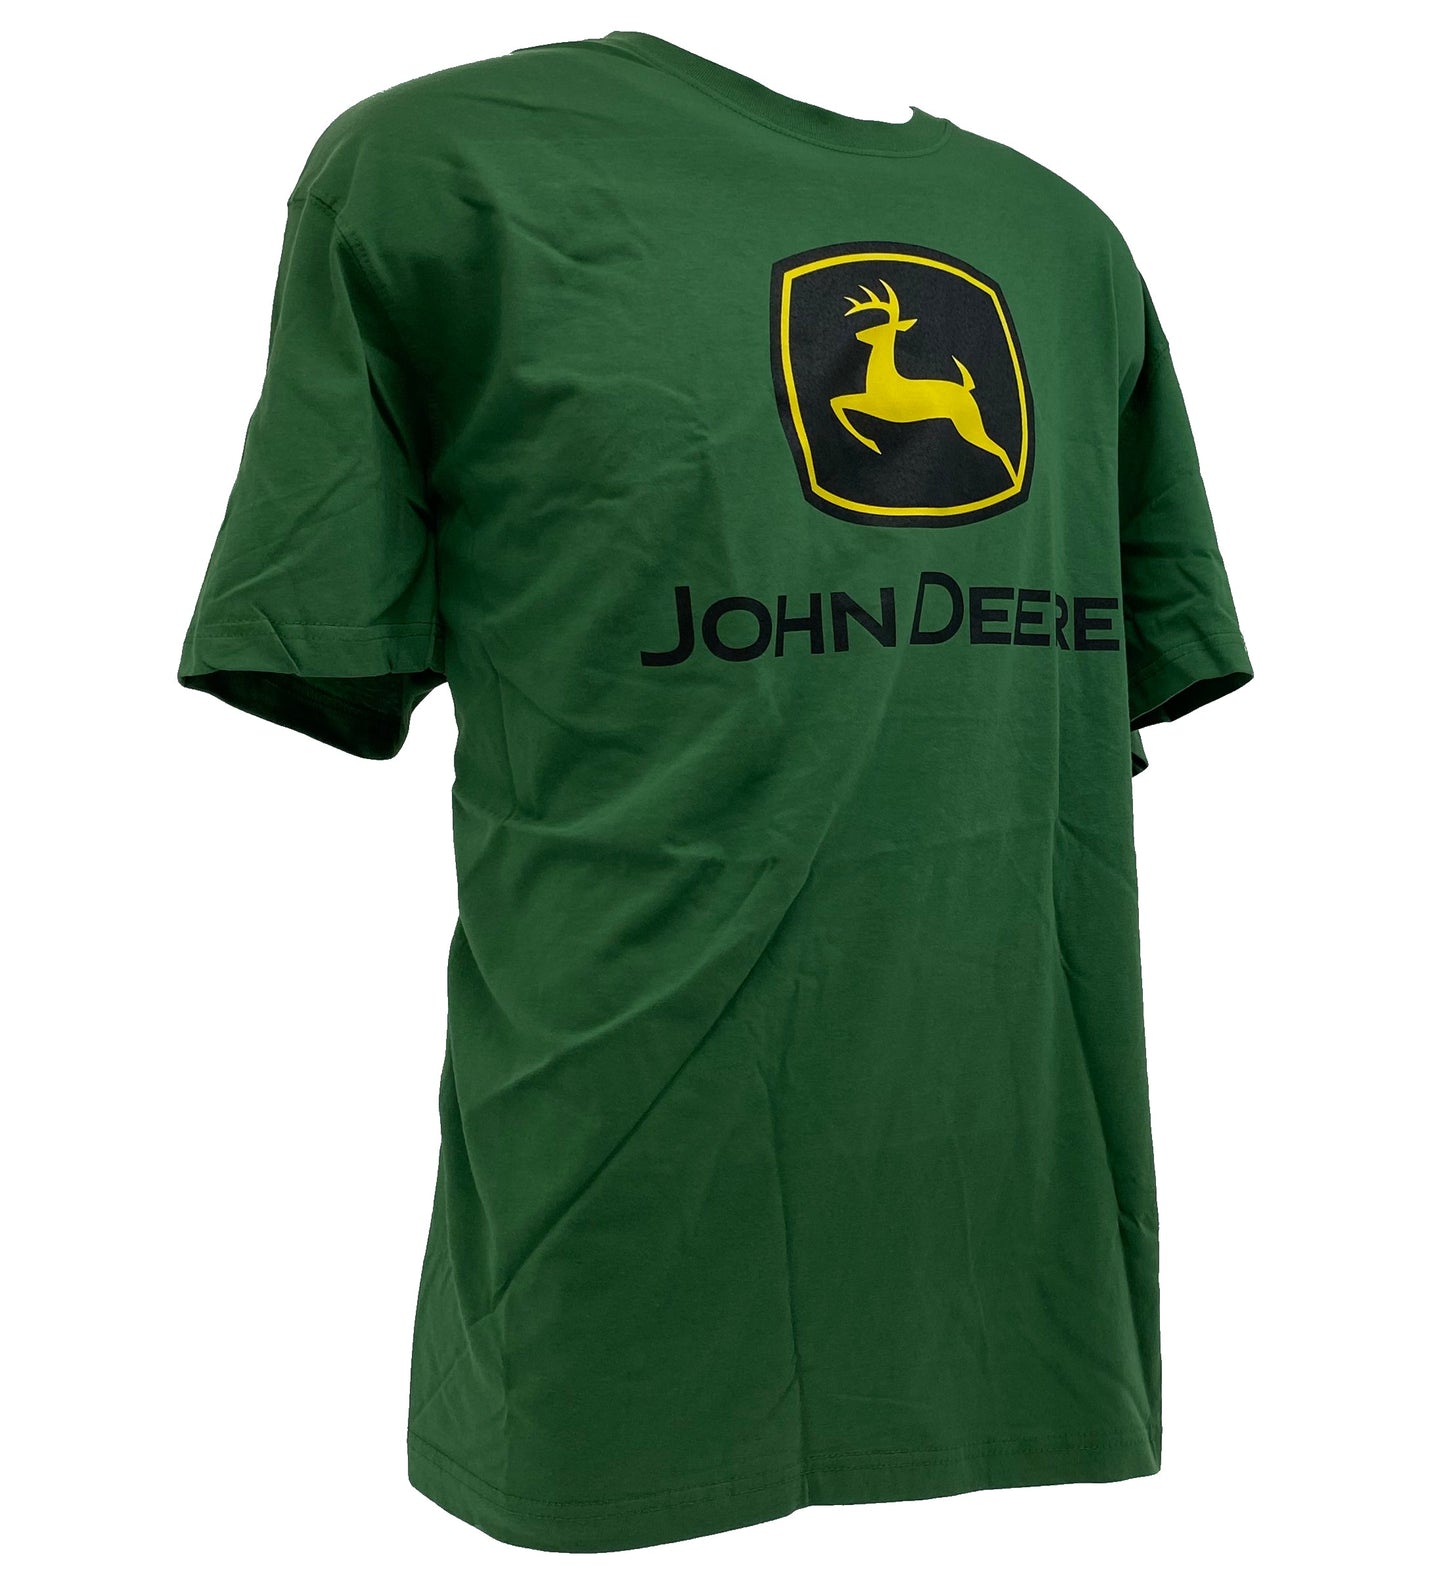 John Deere Green T-Shirt XL - LP75679